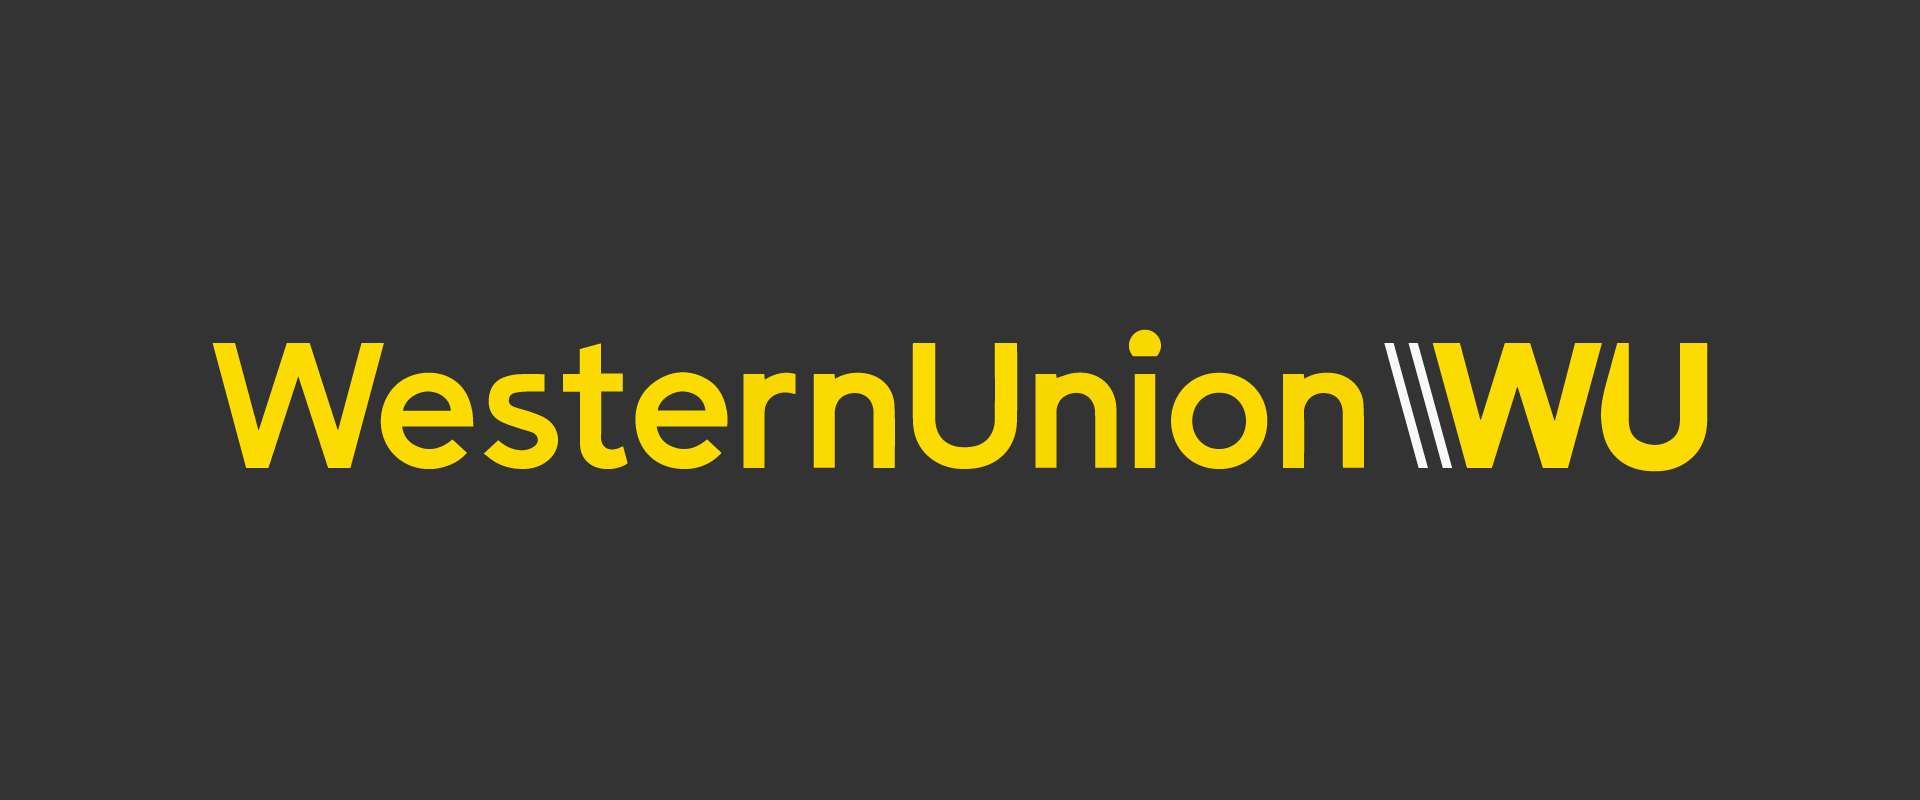 Western_Union